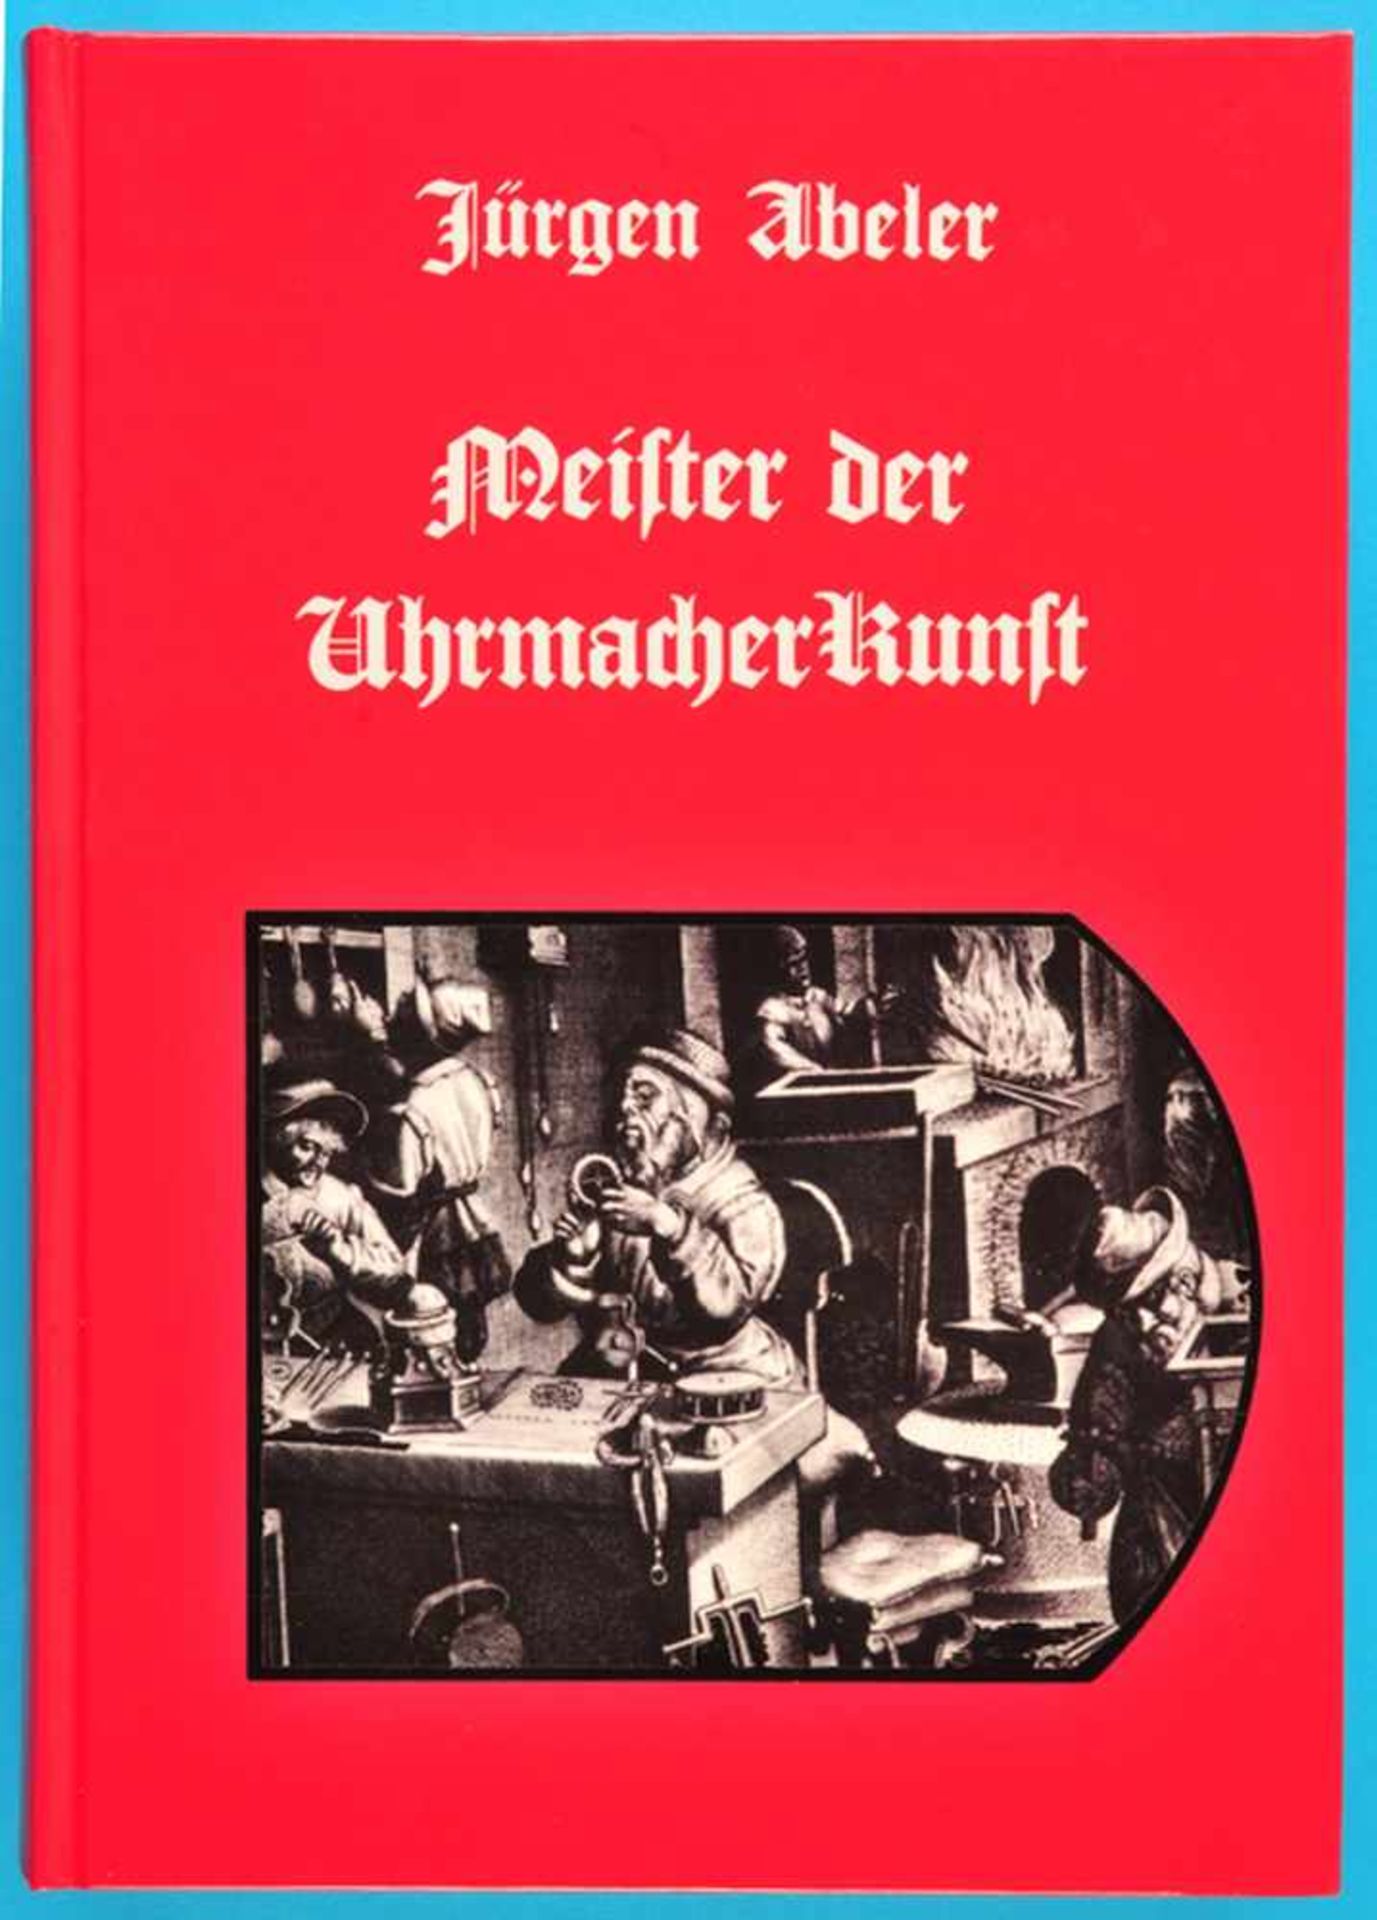 Jürgen Abeler, Meister der Uhrmacherkunst, 2. Auflage 2010, Lexikon mit über 20.000 Uhrmacherdaten